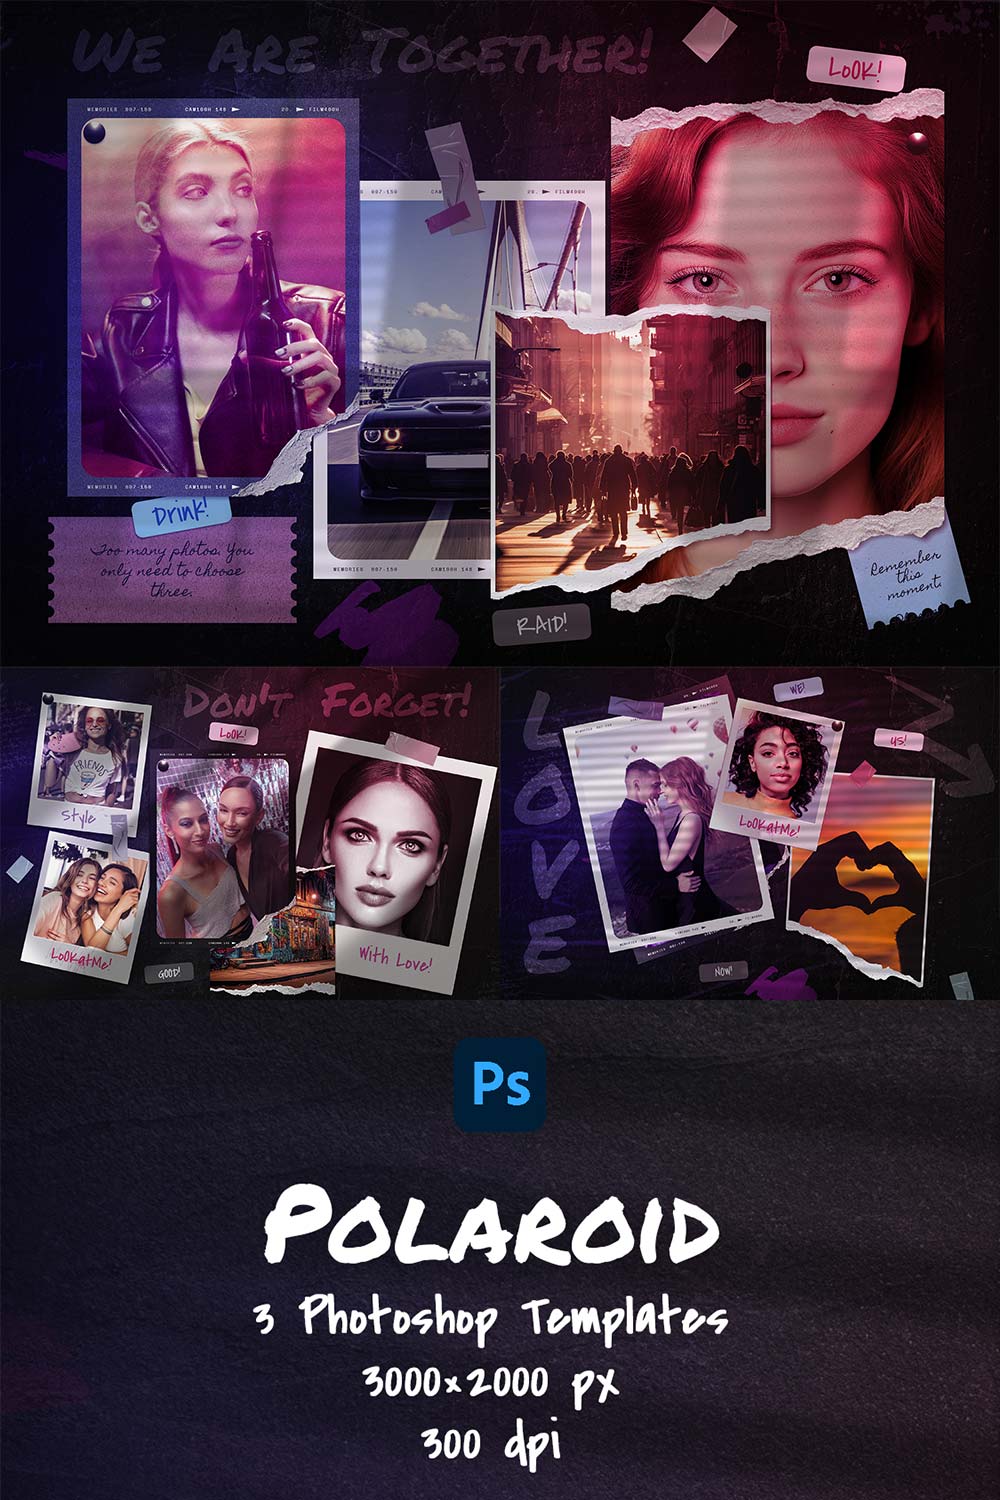 Polaroid Photo Templates pinterest preview image.